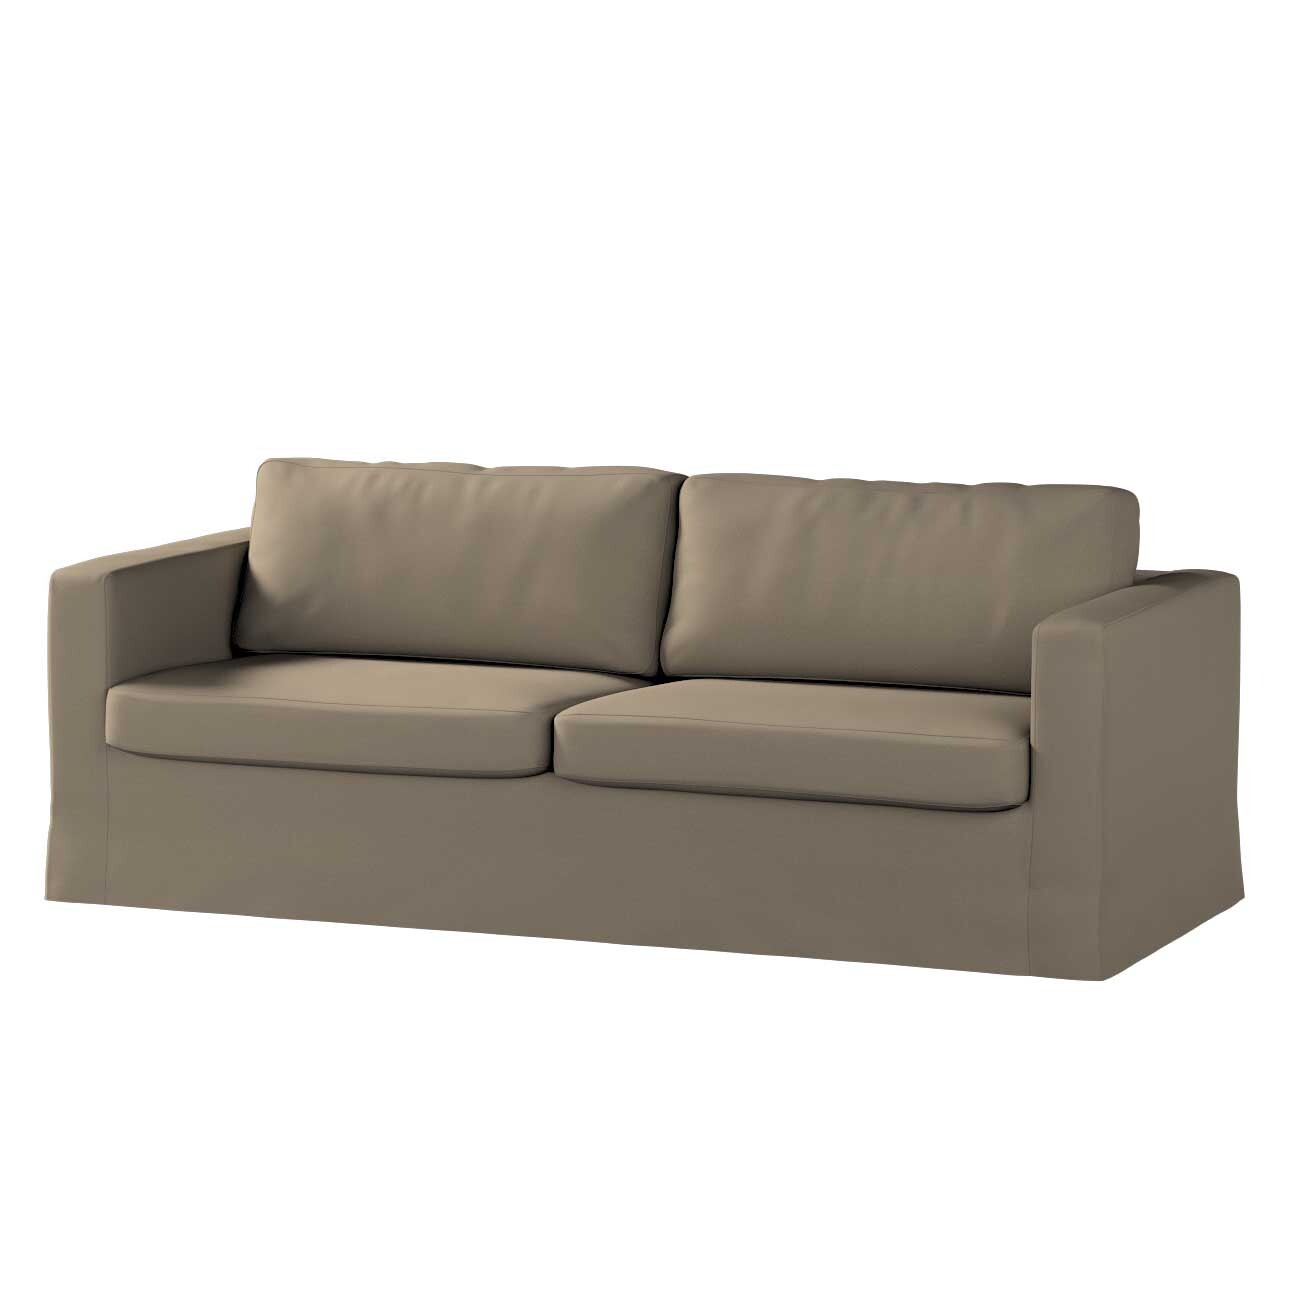 Bezug für Karlstad 3-Sitzer Sofa nicht ausklappbar, lang, mokka, Bezug für günstig online kaufen